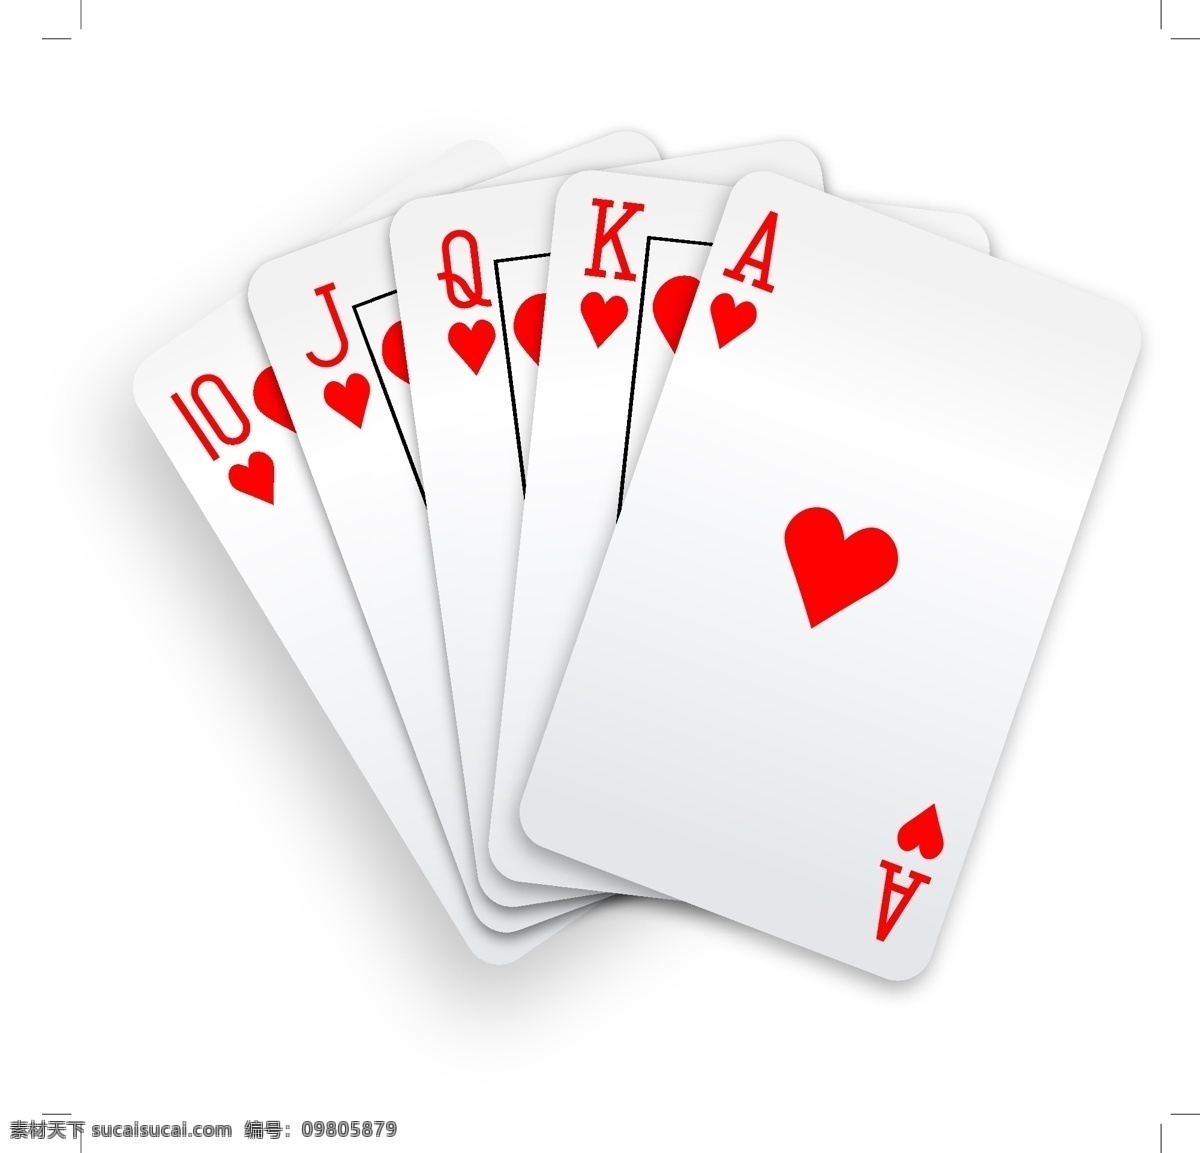 精美 扑克牌 矢量 卡片 矢量素材 数字 图形 牌 红桃 同花顺 矢量图 日常生活